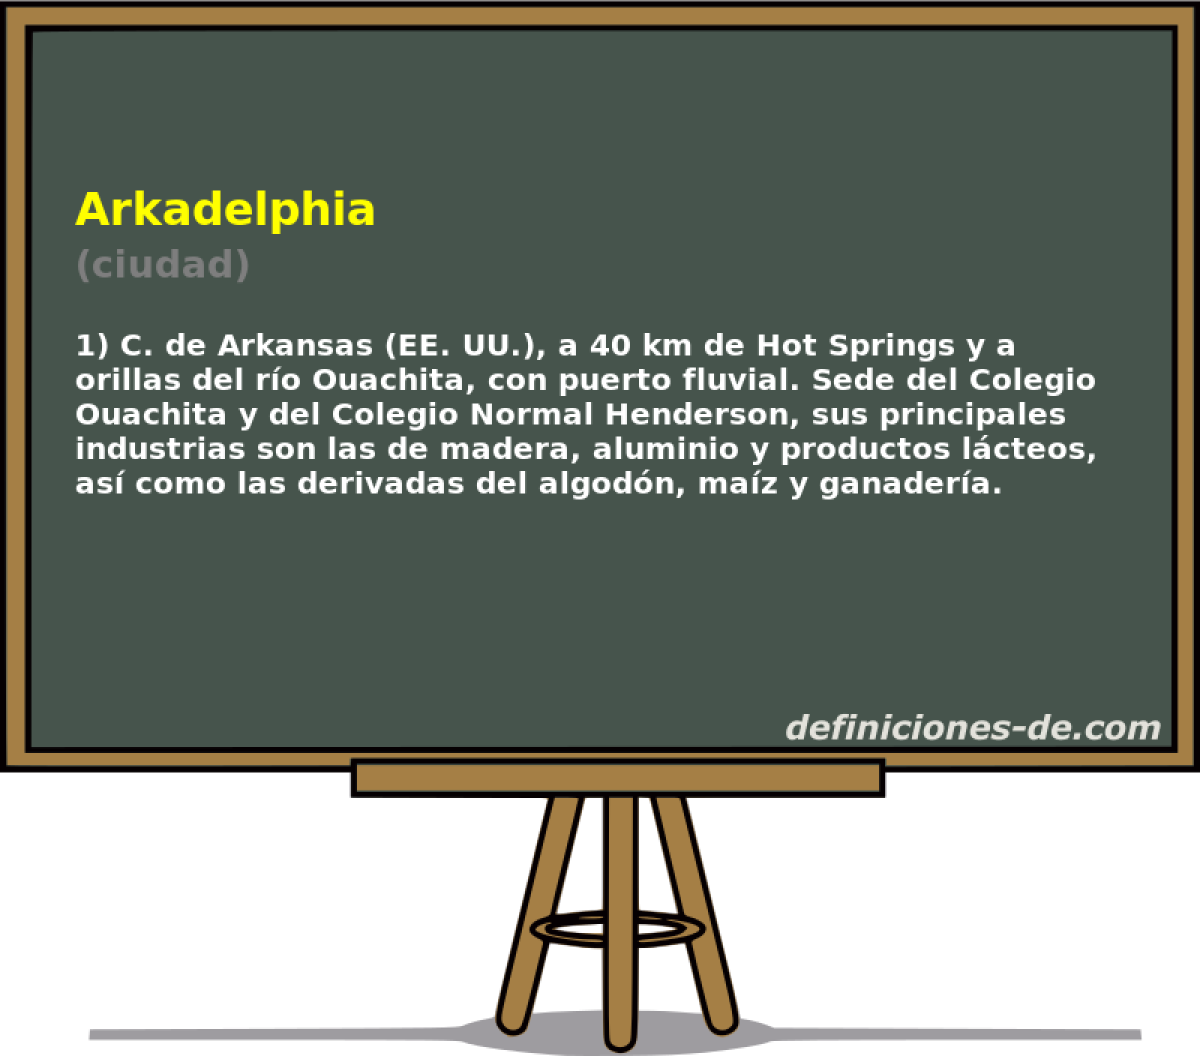 Arkadelphia (ciudad)